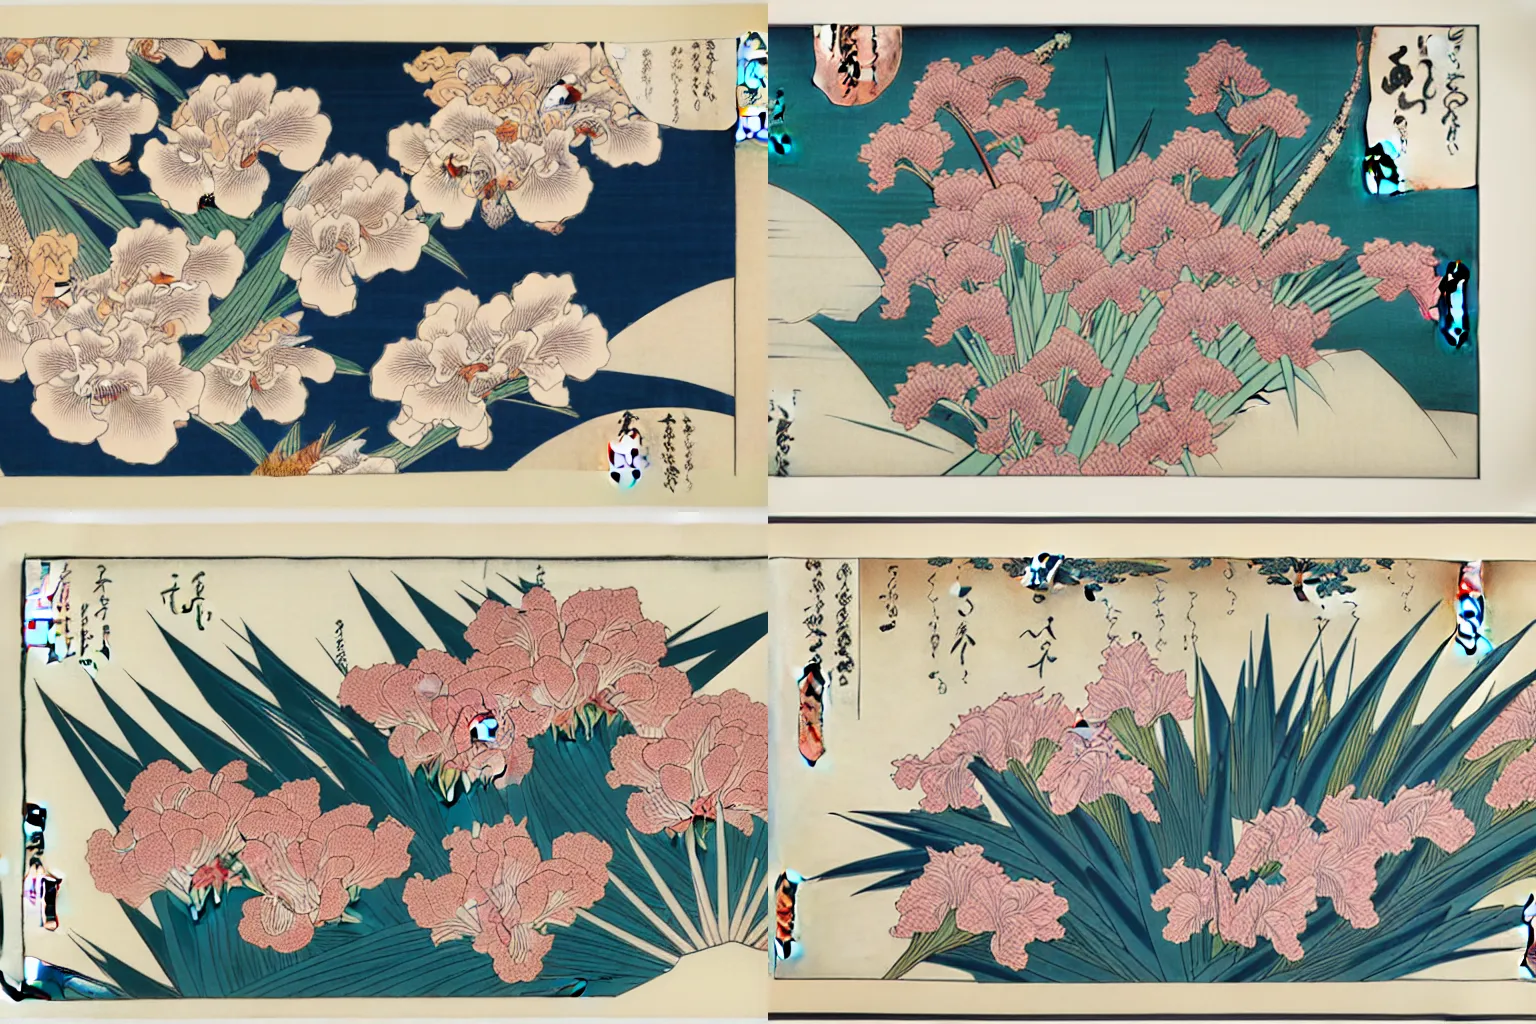 Prompt: a beautiful hyperdetailed ukiyo - e drawing of a tangle of irises and flowers by katsushika hokusai, in style by utagawa kuniyoshi and utagawa hiroshige, japanese print art, intricate, complex, 4 k